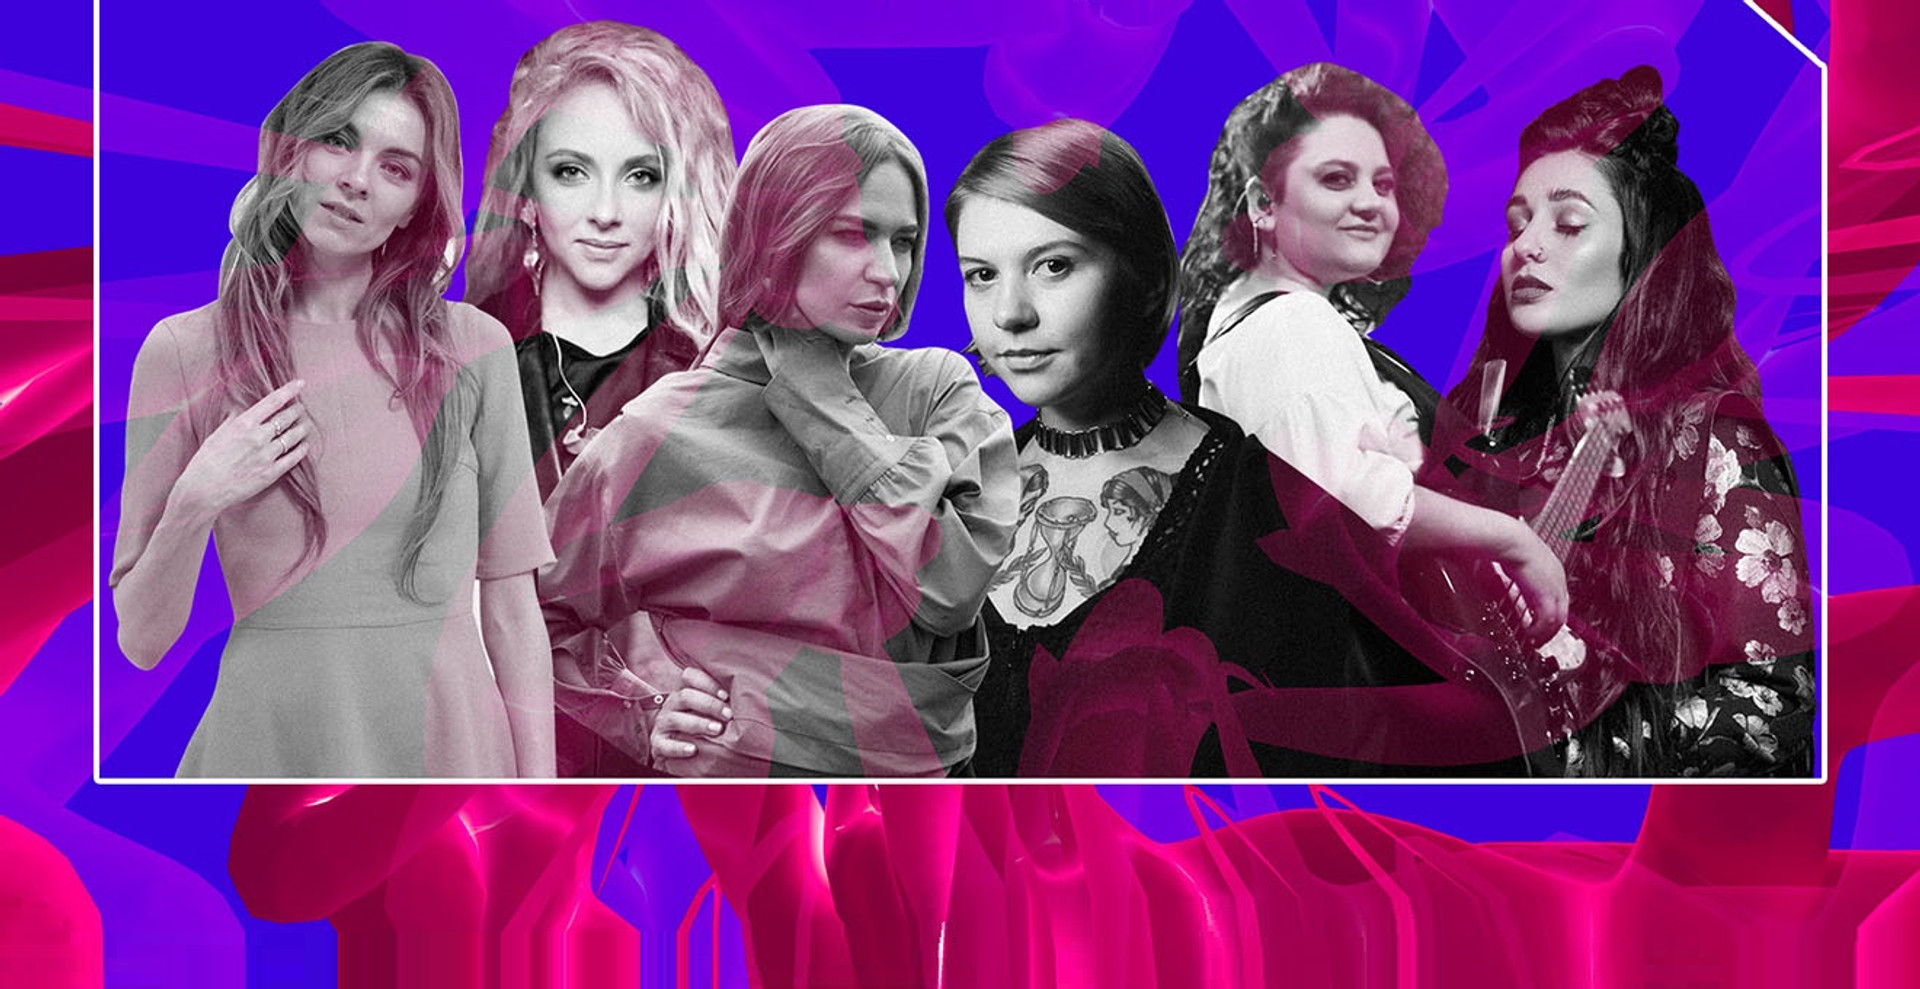 Сексизм и музыка: существует ли гендерная дискриминация в шоу-бизнесе Украины